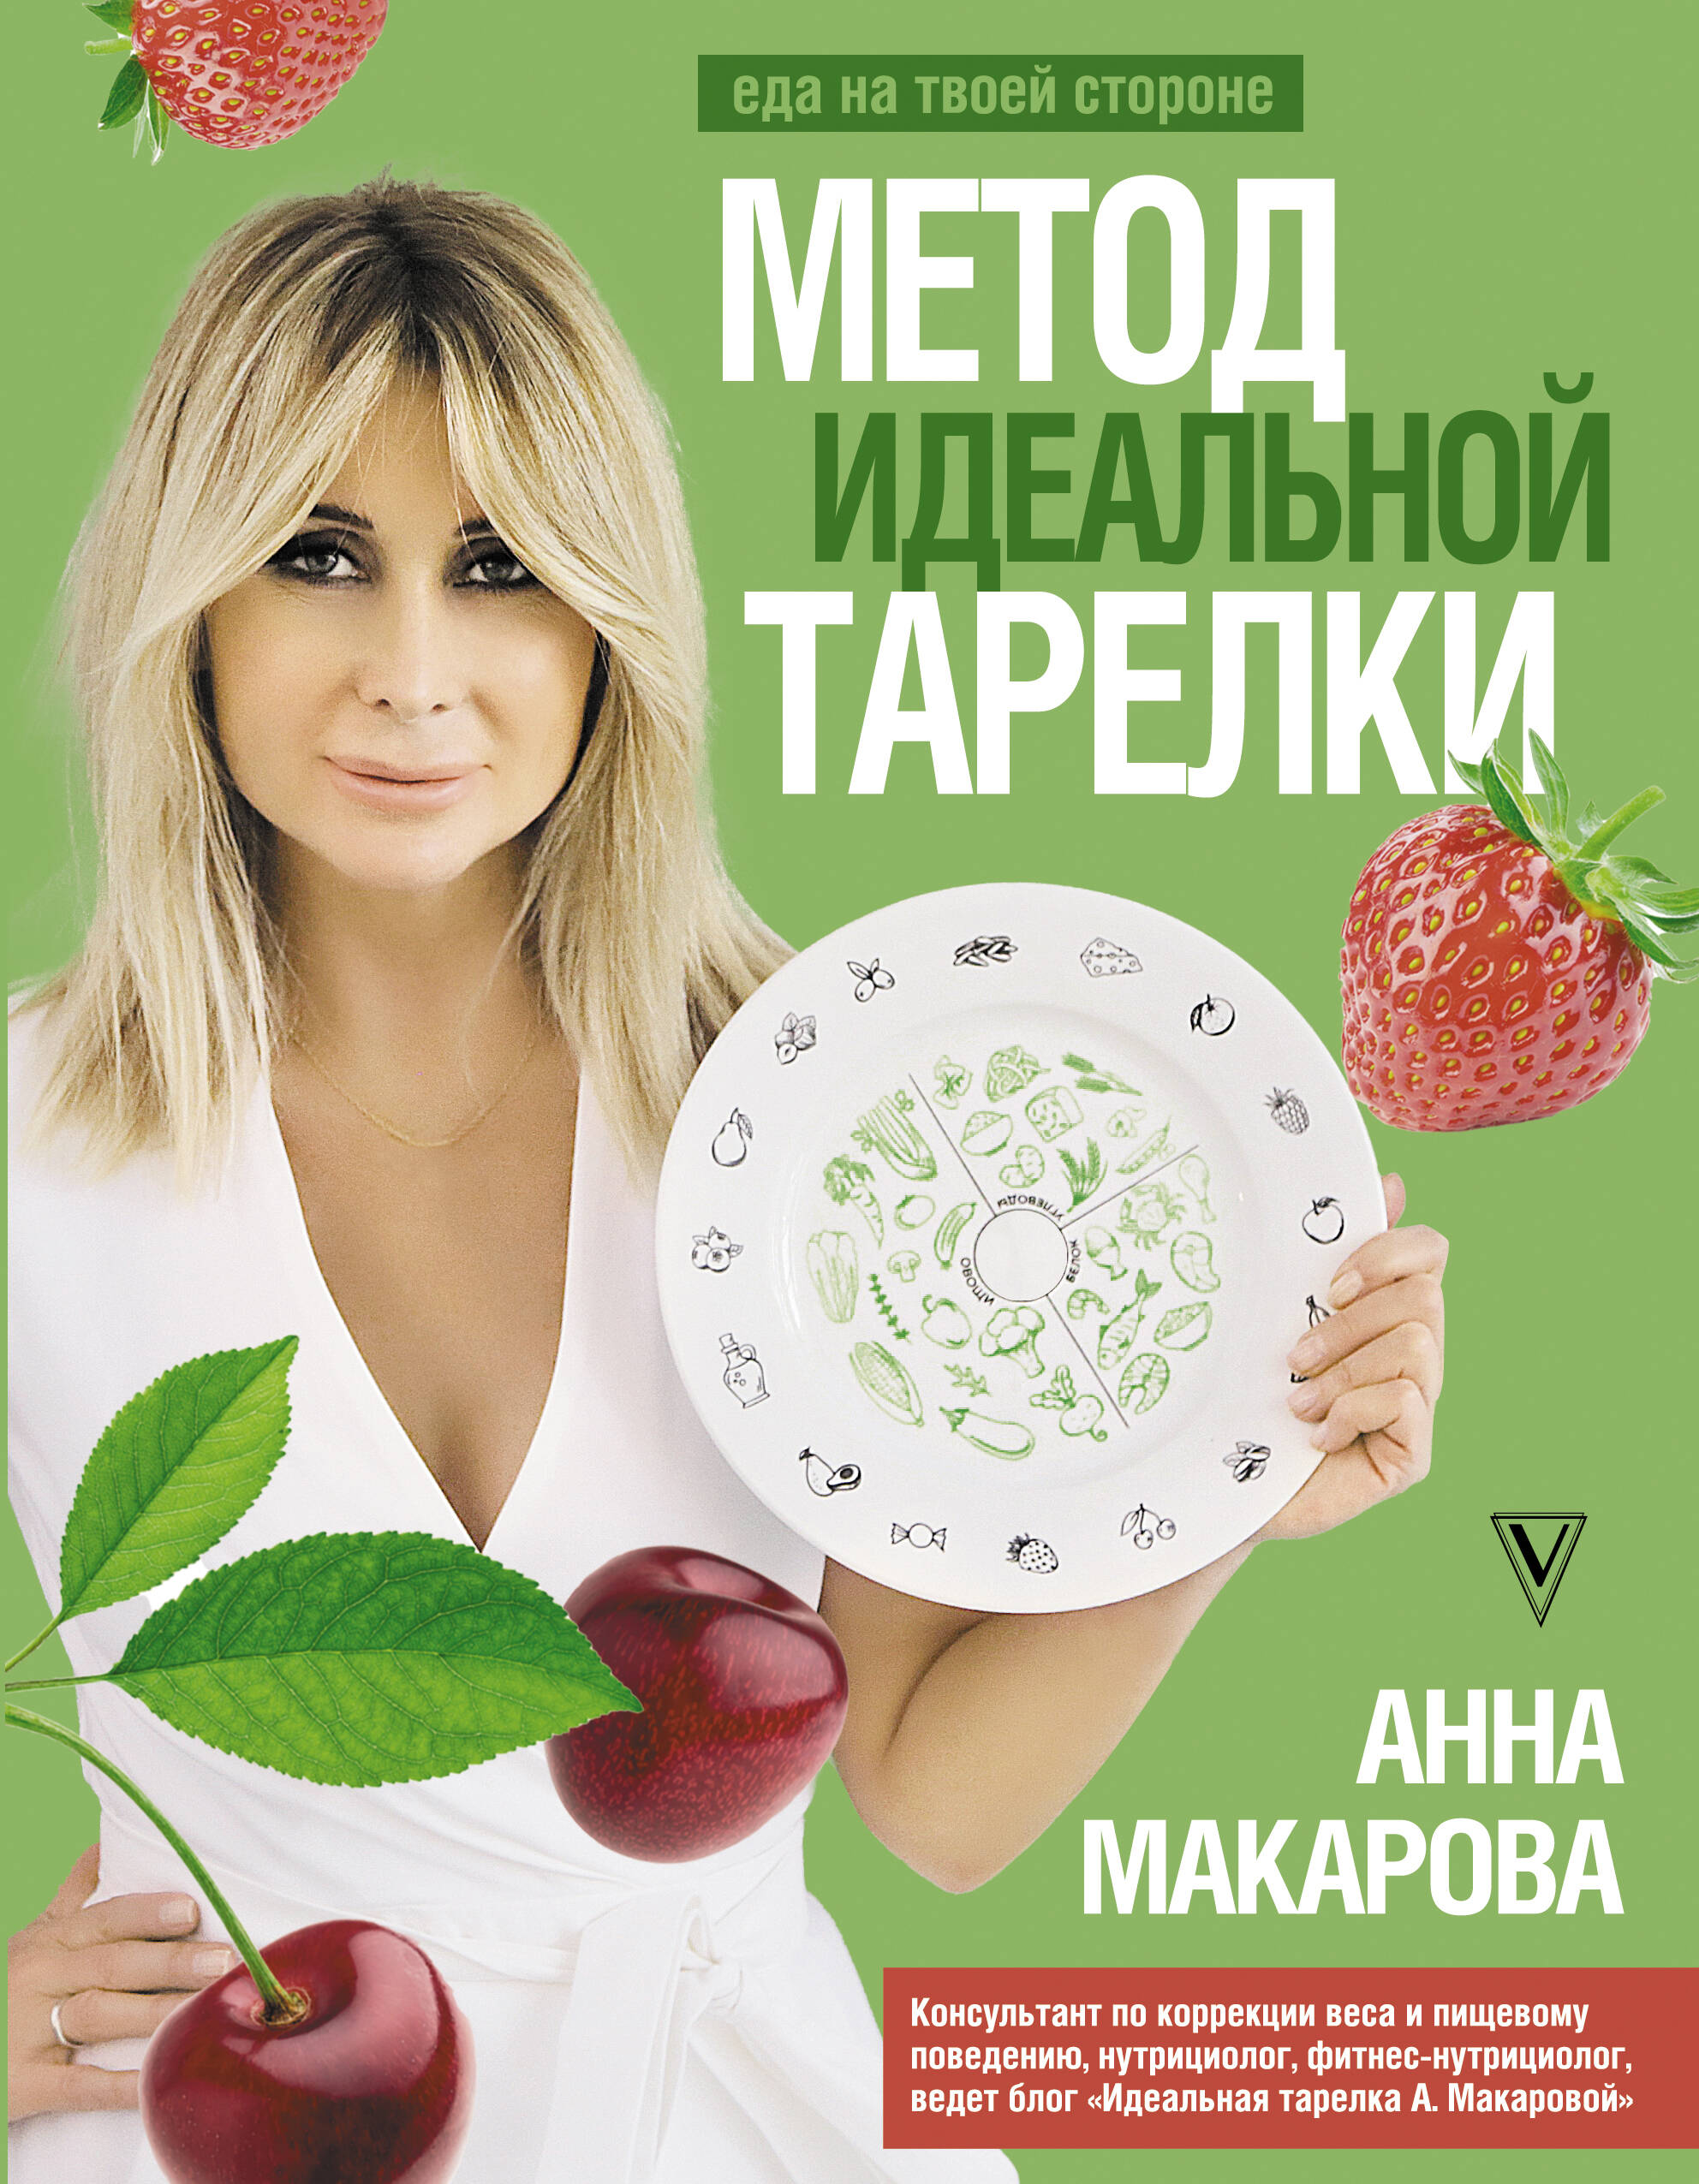 Макарова Анна Метод идеальной тарелки: еда на твоей стороне